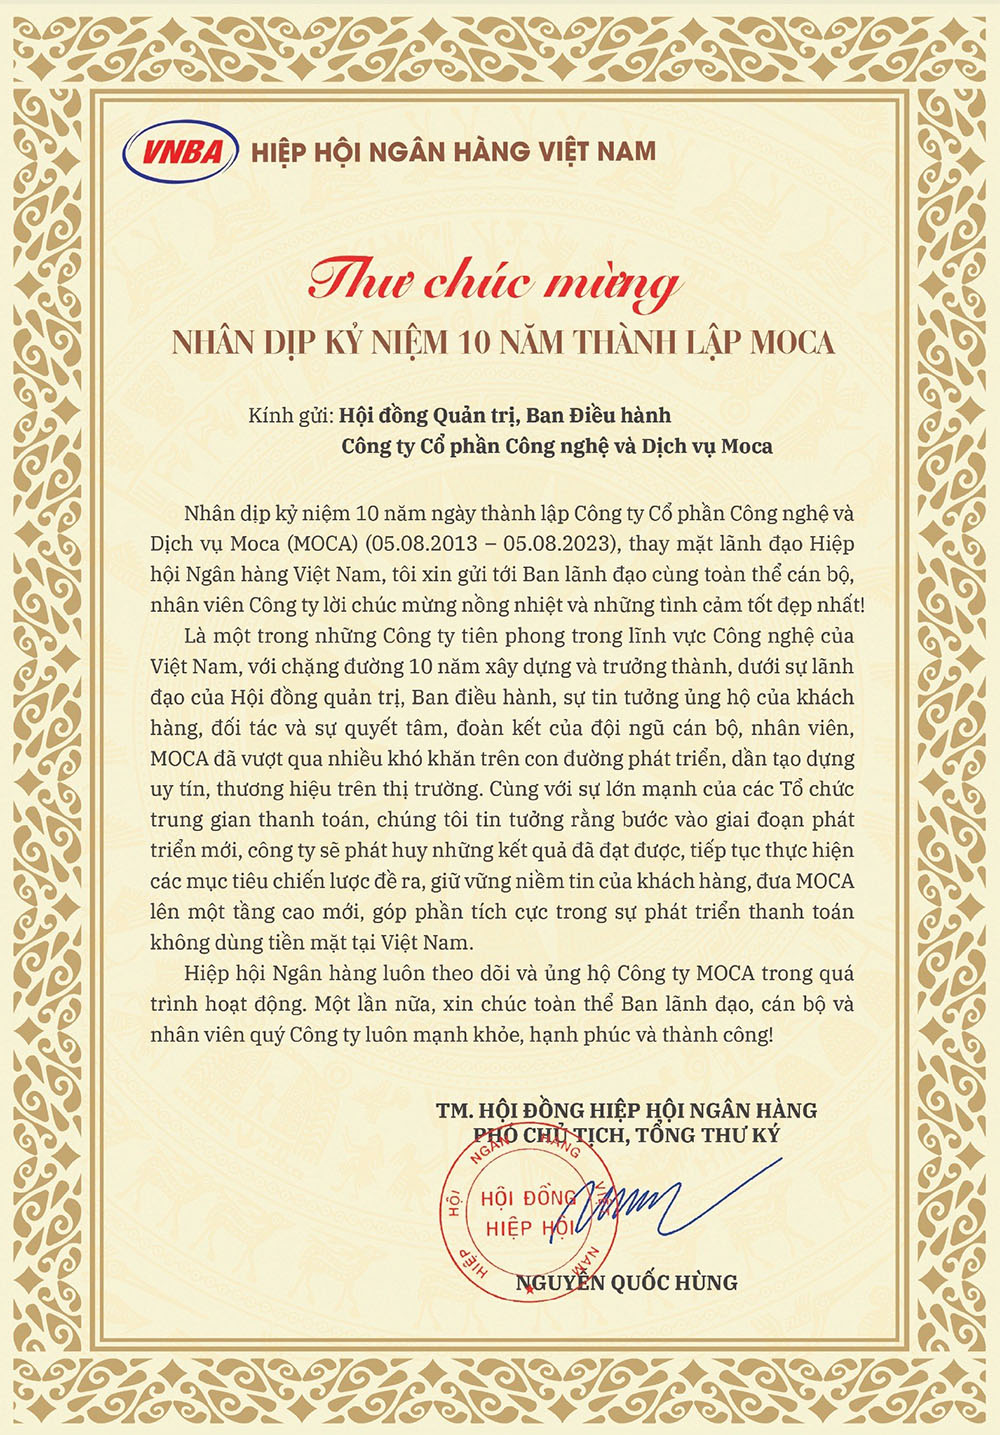 Hiệp hội Ngân hàng Việt Nam chúc mừng Moca nhân dịp kỷ niệm 10 năm thành lập